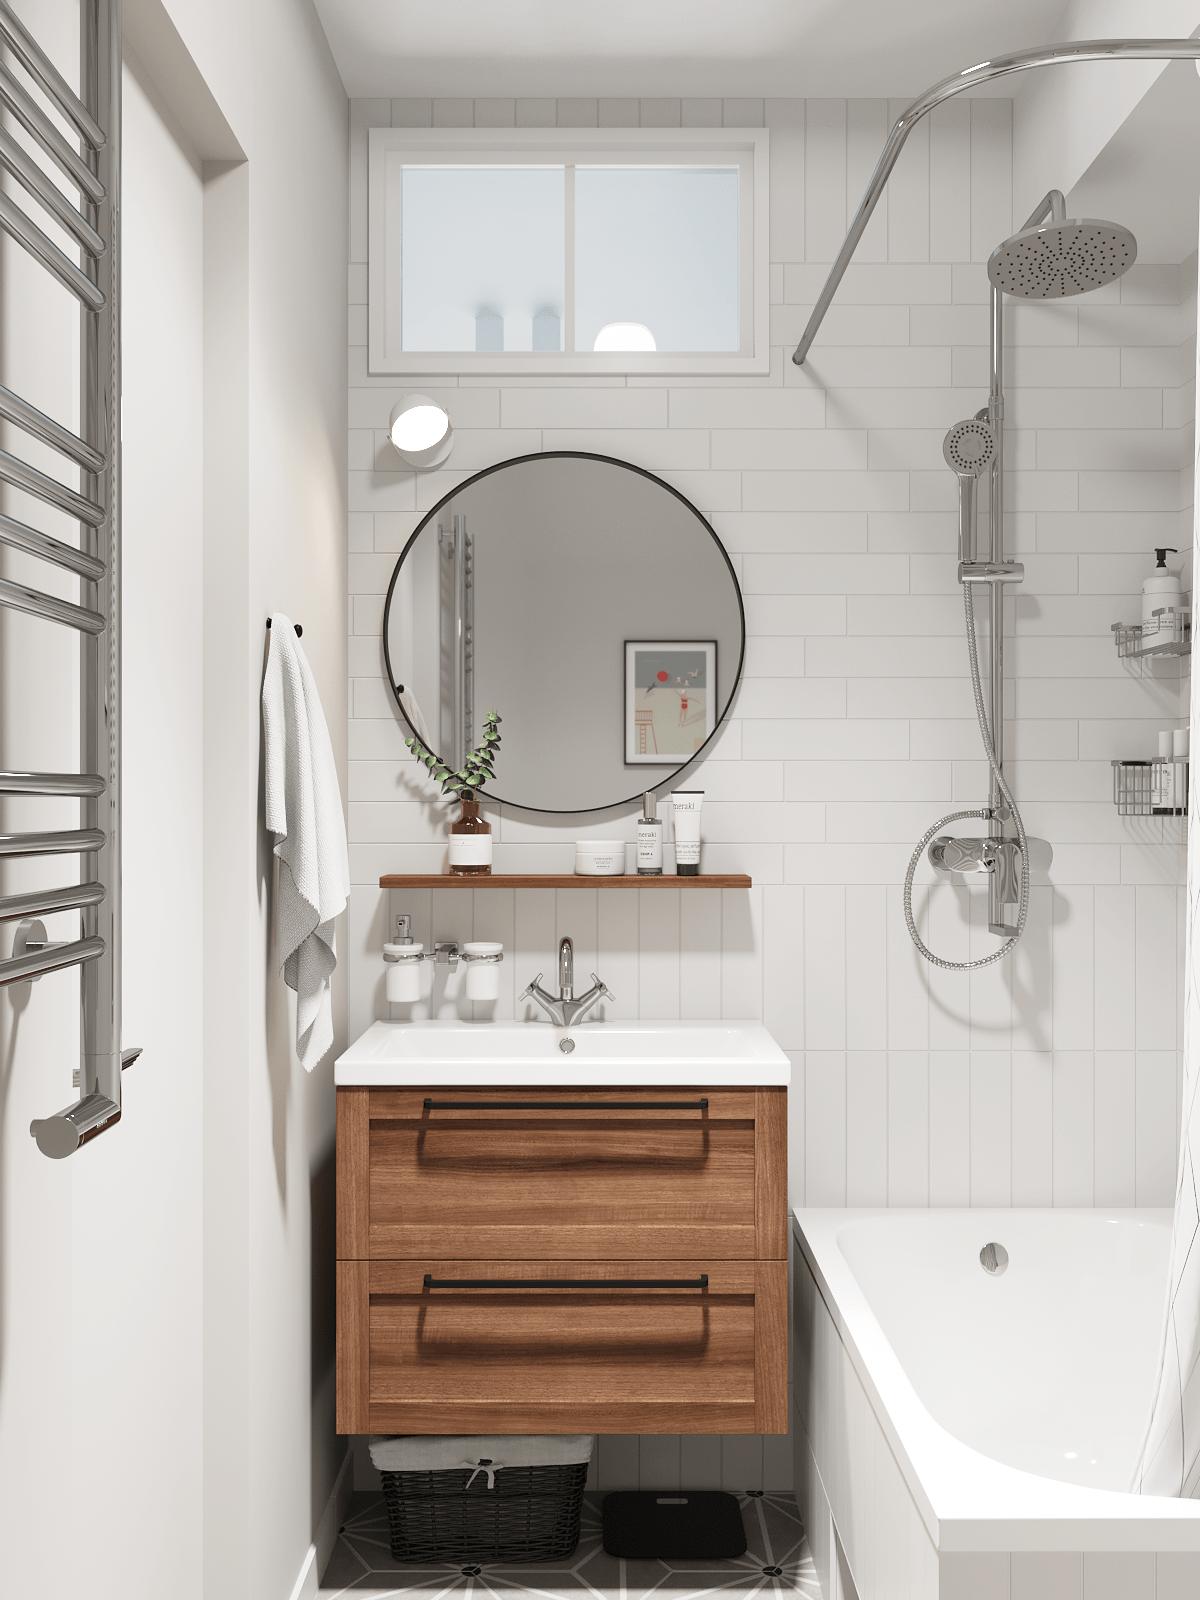 Phòng tắm với chiếc tủ gỗ kết hợp bồn rửa bằng sứ gắn tường tiện lợi, bên trên là kệ mở cùng tấm gương soi hình tròn phản chiếu ánh sáng cho không gian rộng hơn.